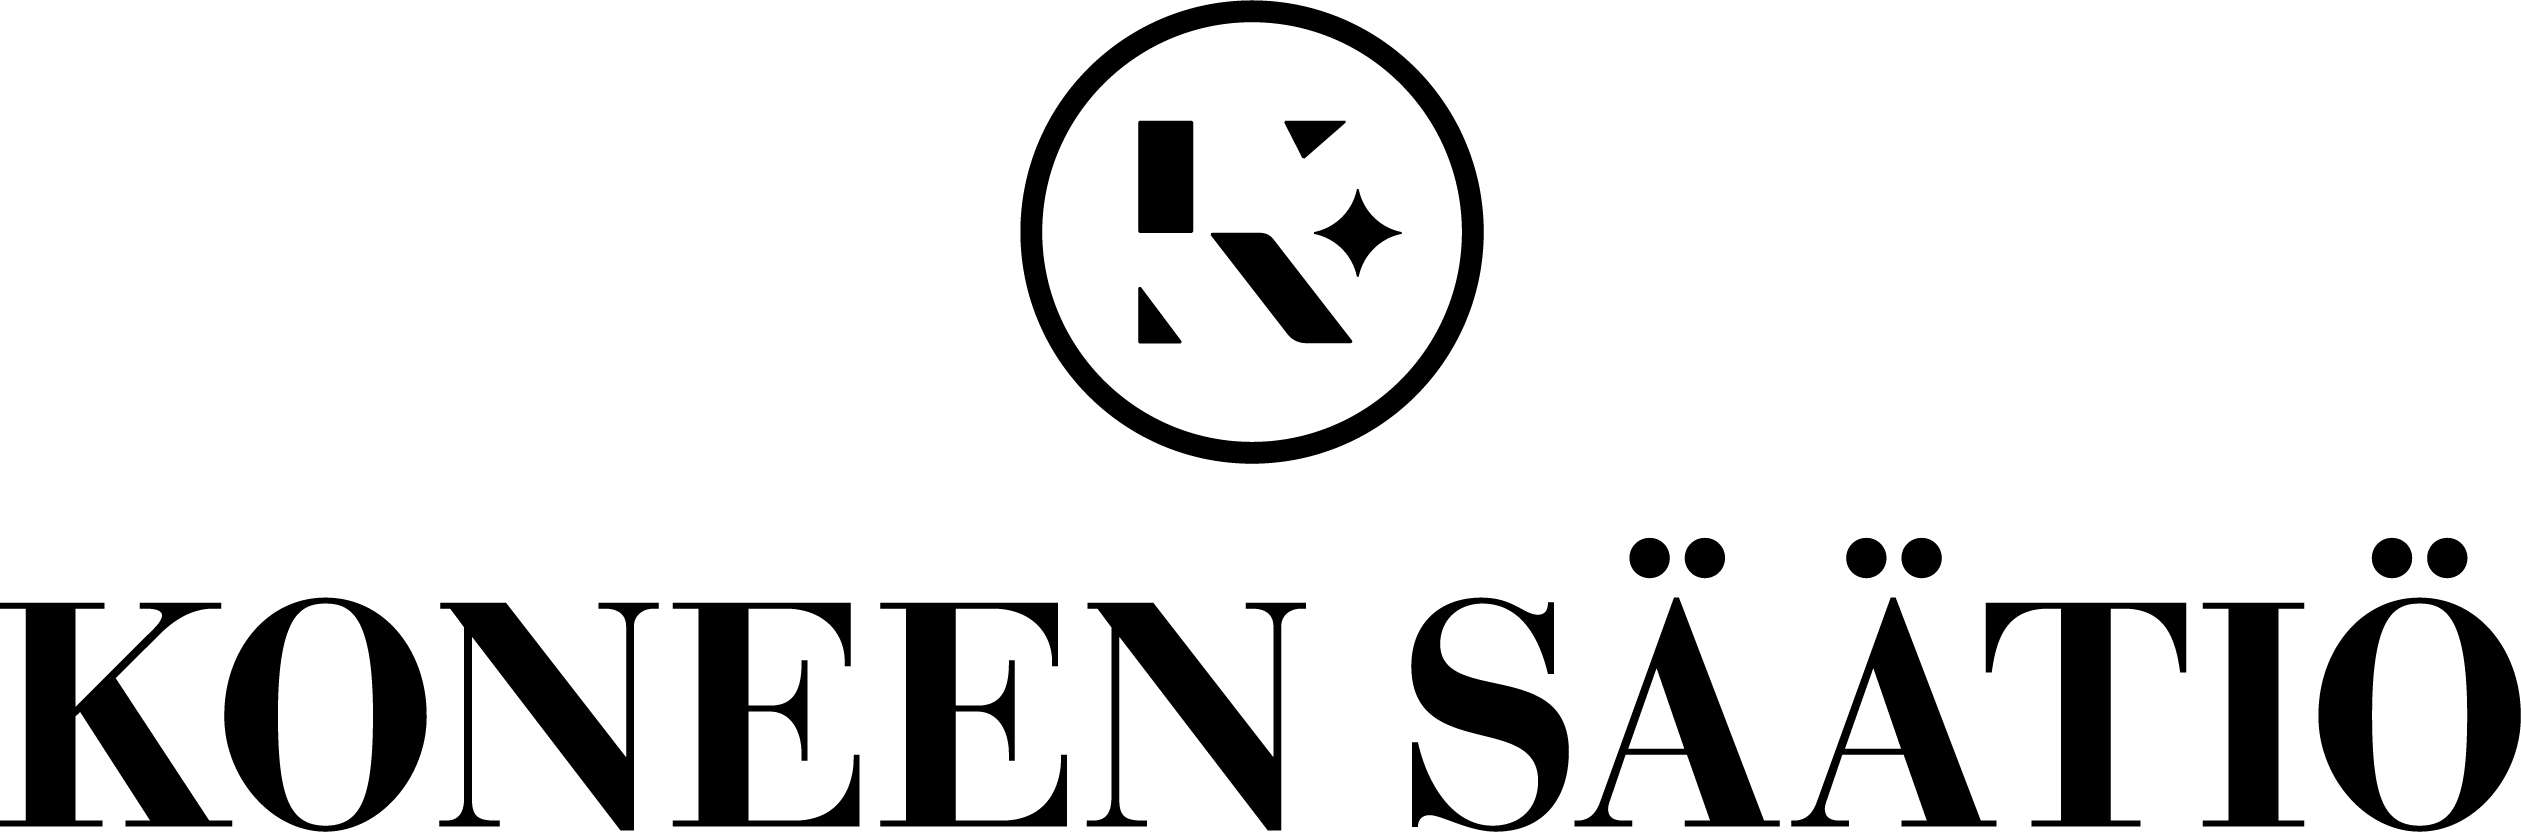 Koneen säätiö -logo